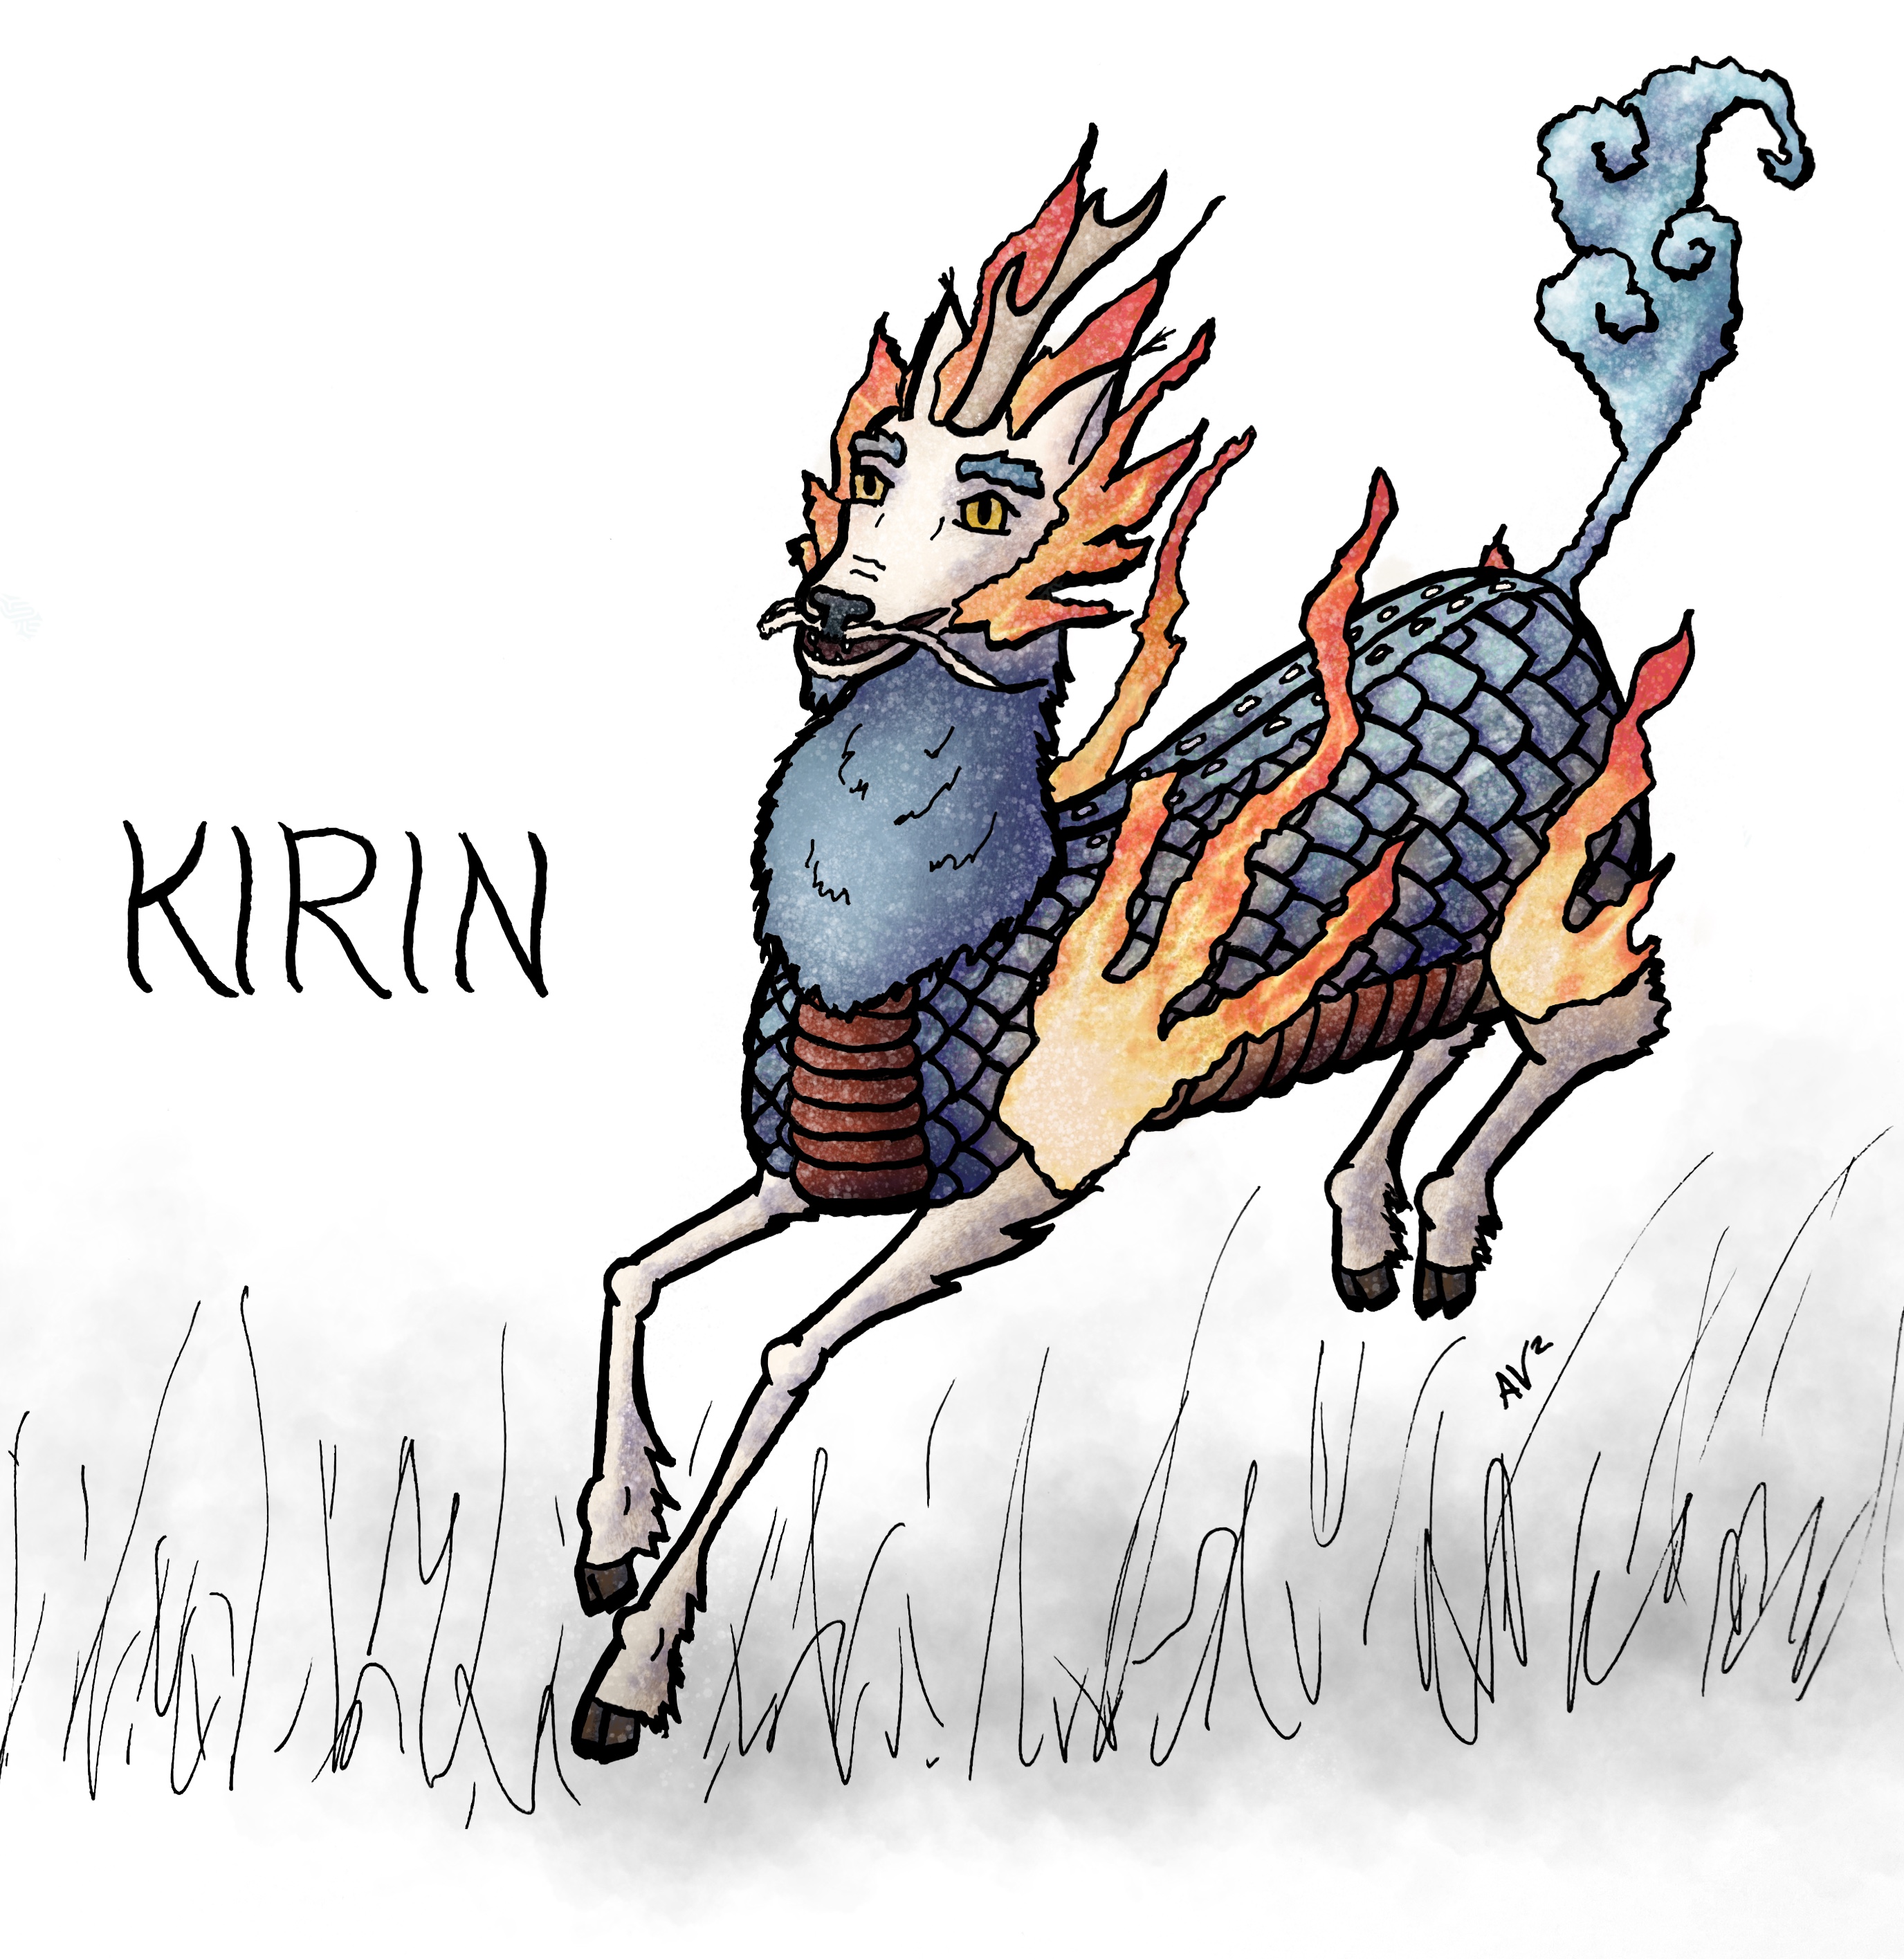 Ki-rin